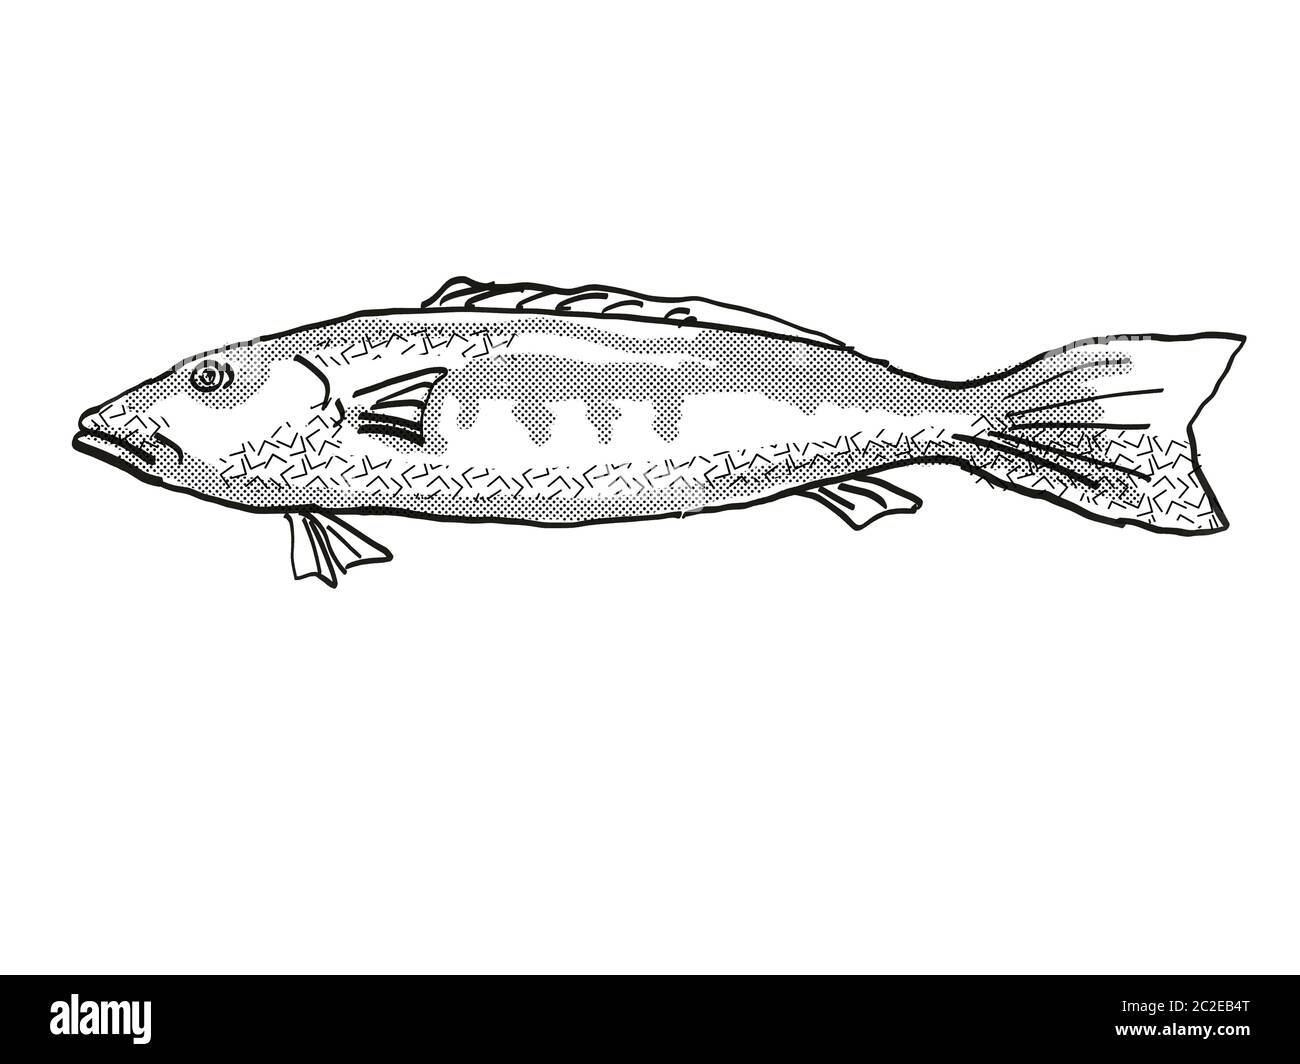 Retro cartoon style dessin d'une morue bleue , originaire de la Nouvelle-Zélande la vie marine vu de côté des espèces isolées sur fond blanc en noir et w Banque D'Images